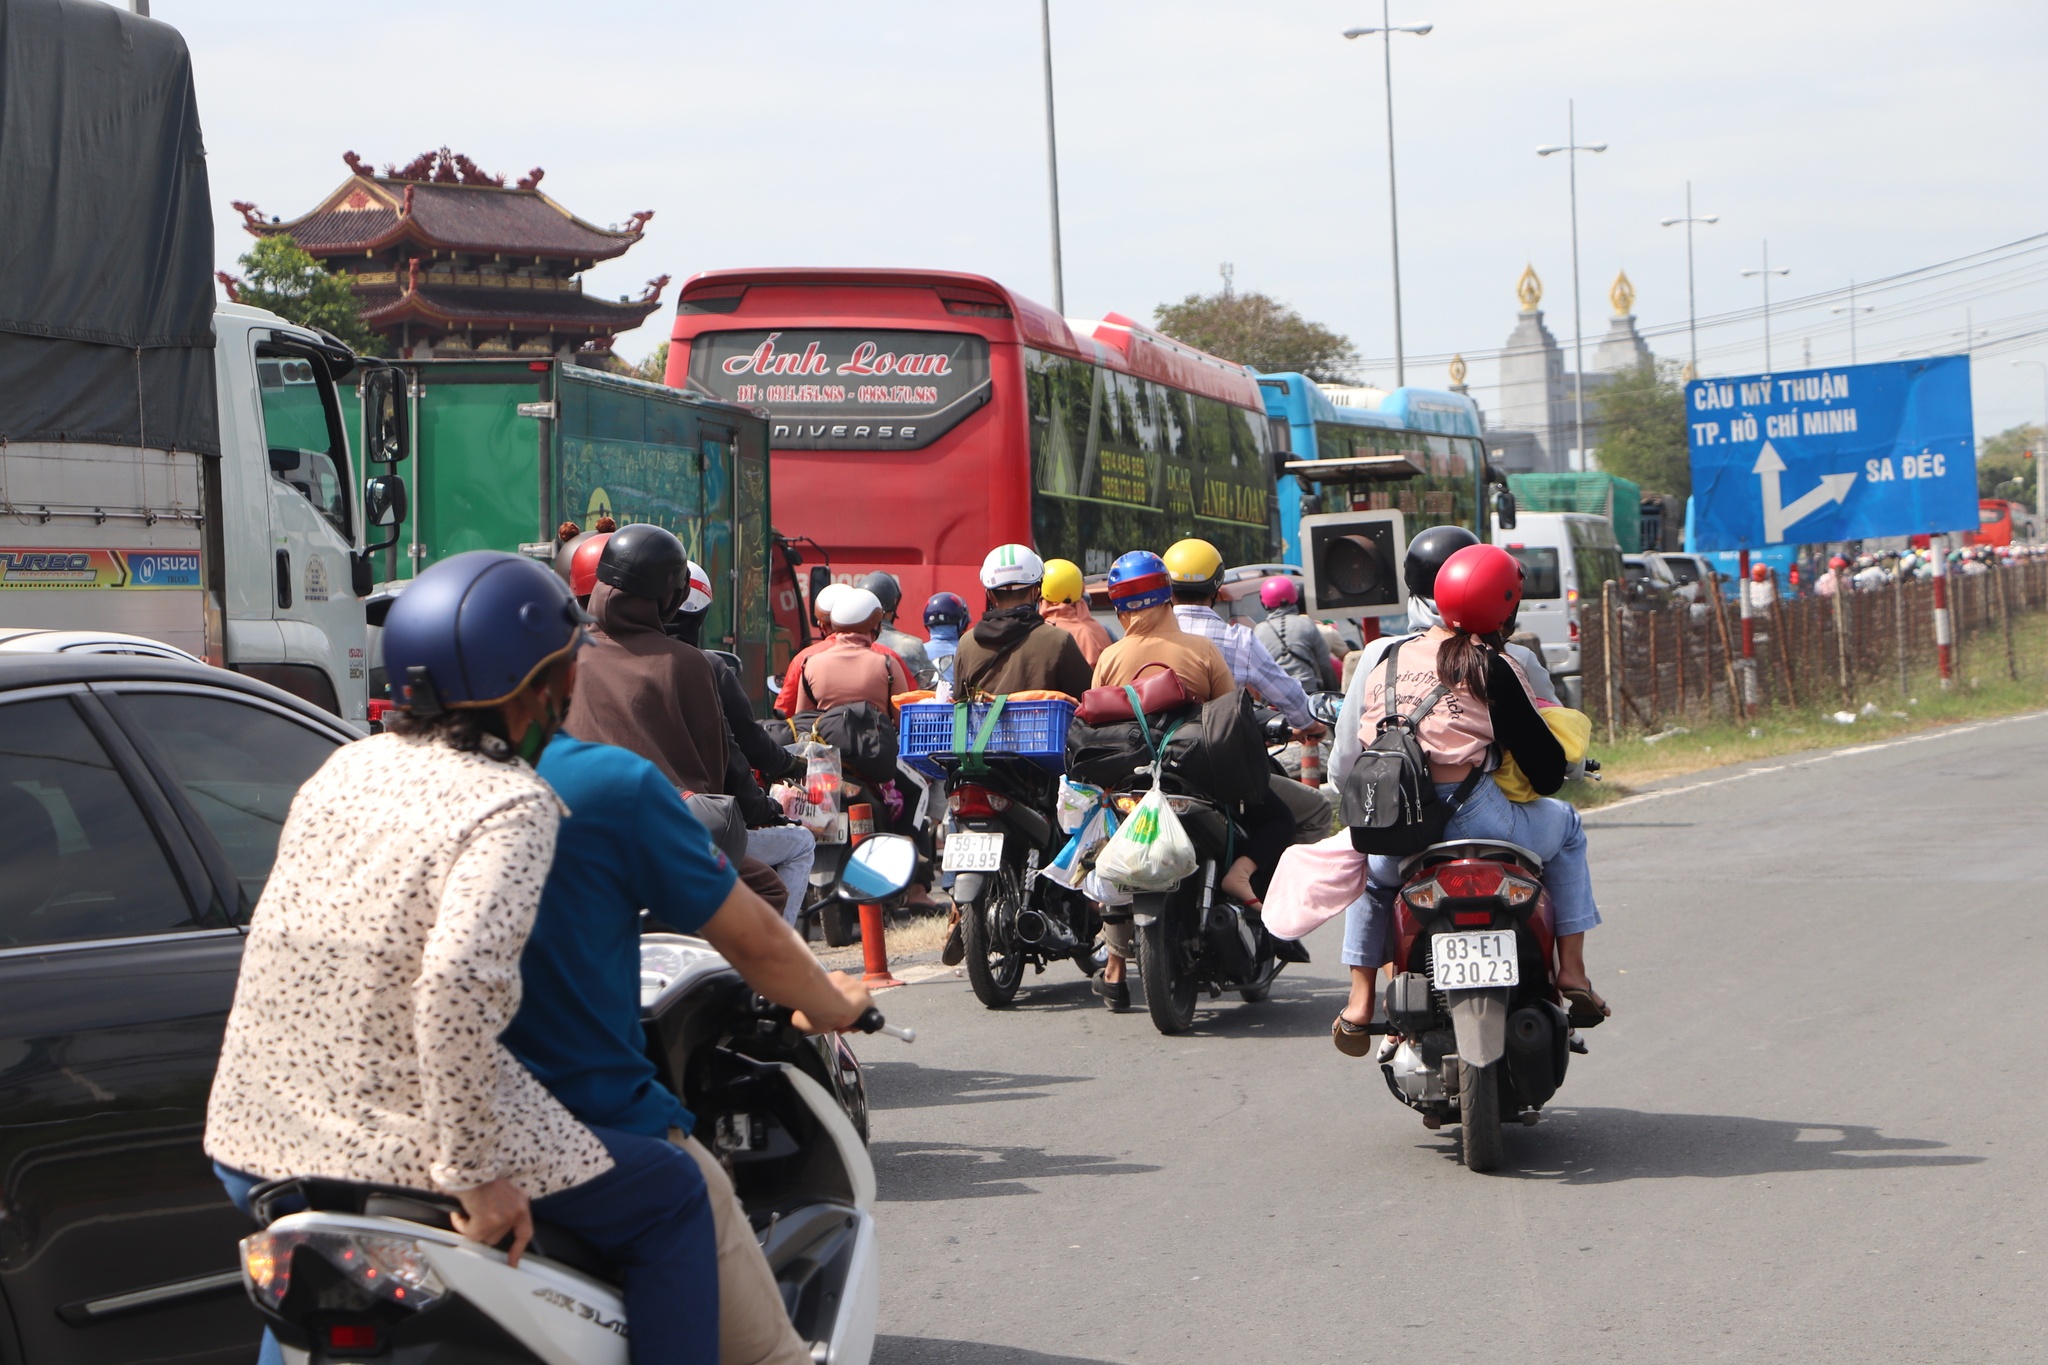 Trở lại TP.HCM làm việc sau tết: Mệt lả người vì kẹt xe ở cầu Mỹ Thuận - ảnh 3